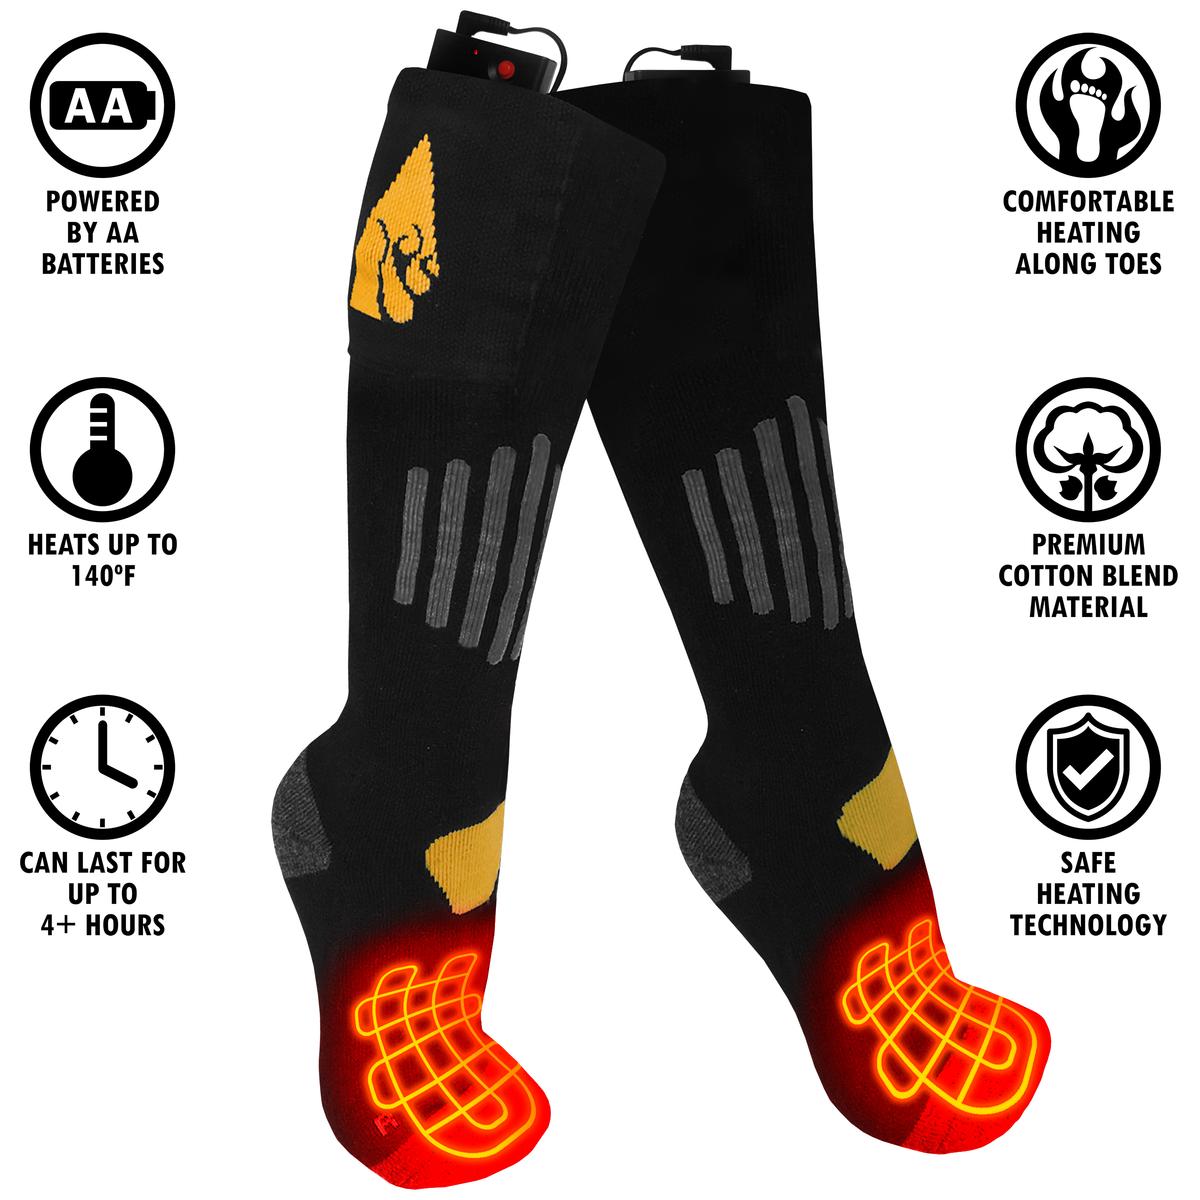 ActionHeat AA Cotton Battery Heated Socks - Info